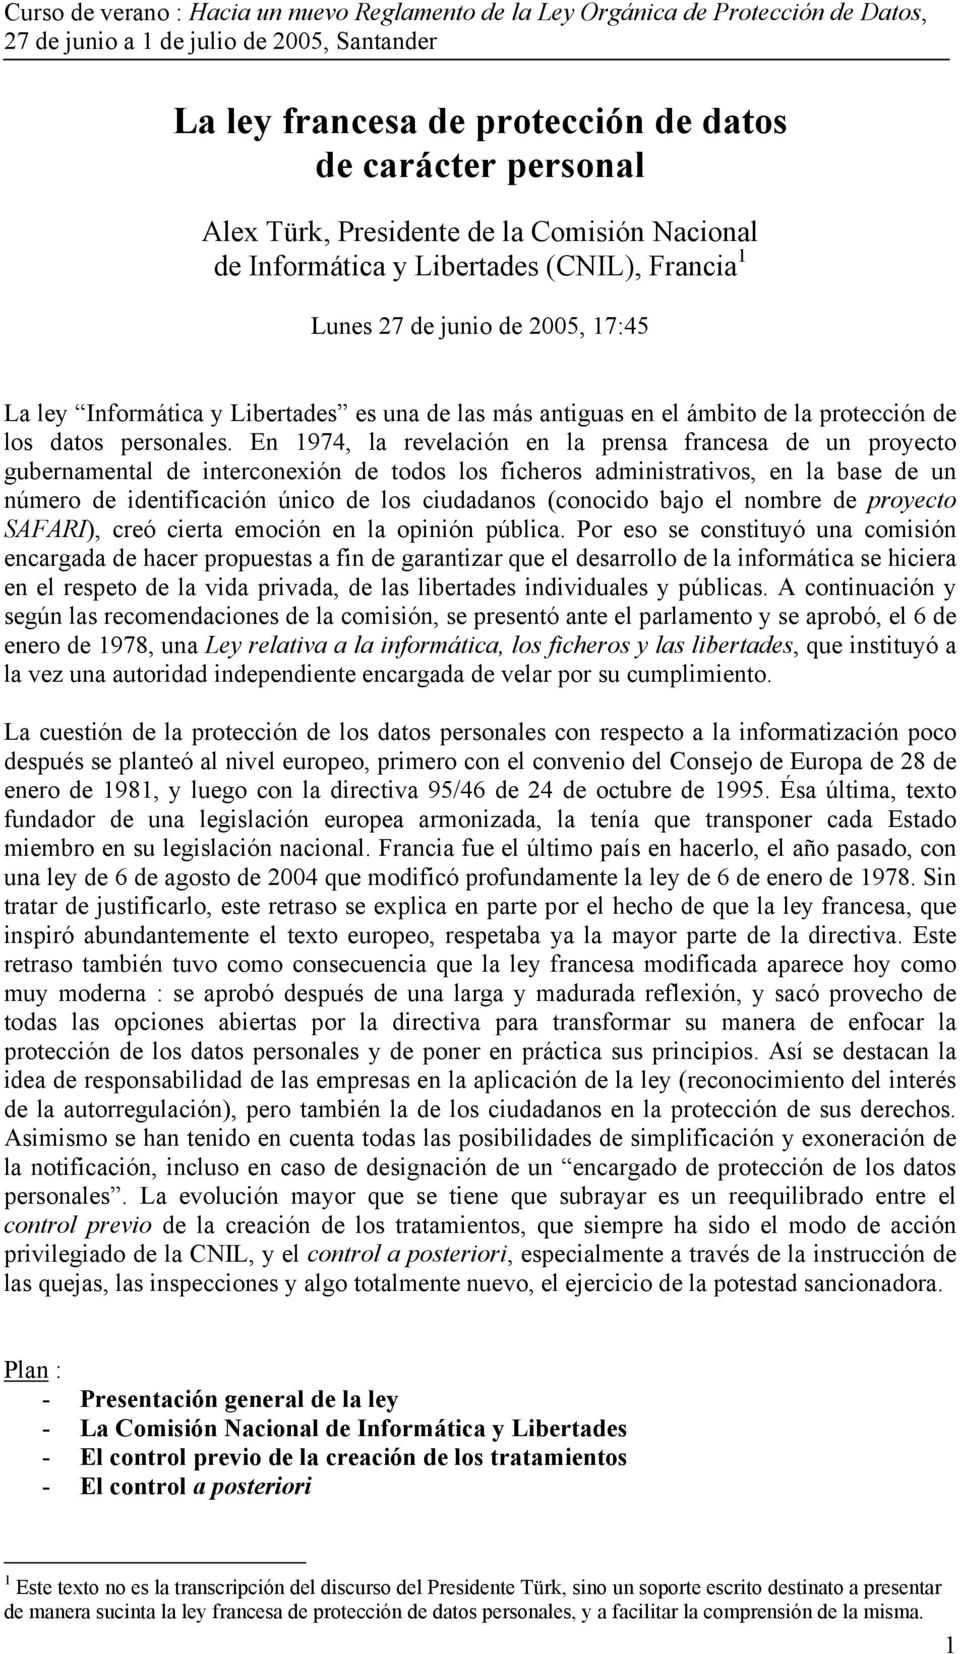 En 1974, la revelación en la prensa francesa de un proyecto gubernamental de interconexión de todos los ficheros administrativos, en la base de un número de identificación único de los ciudadanos